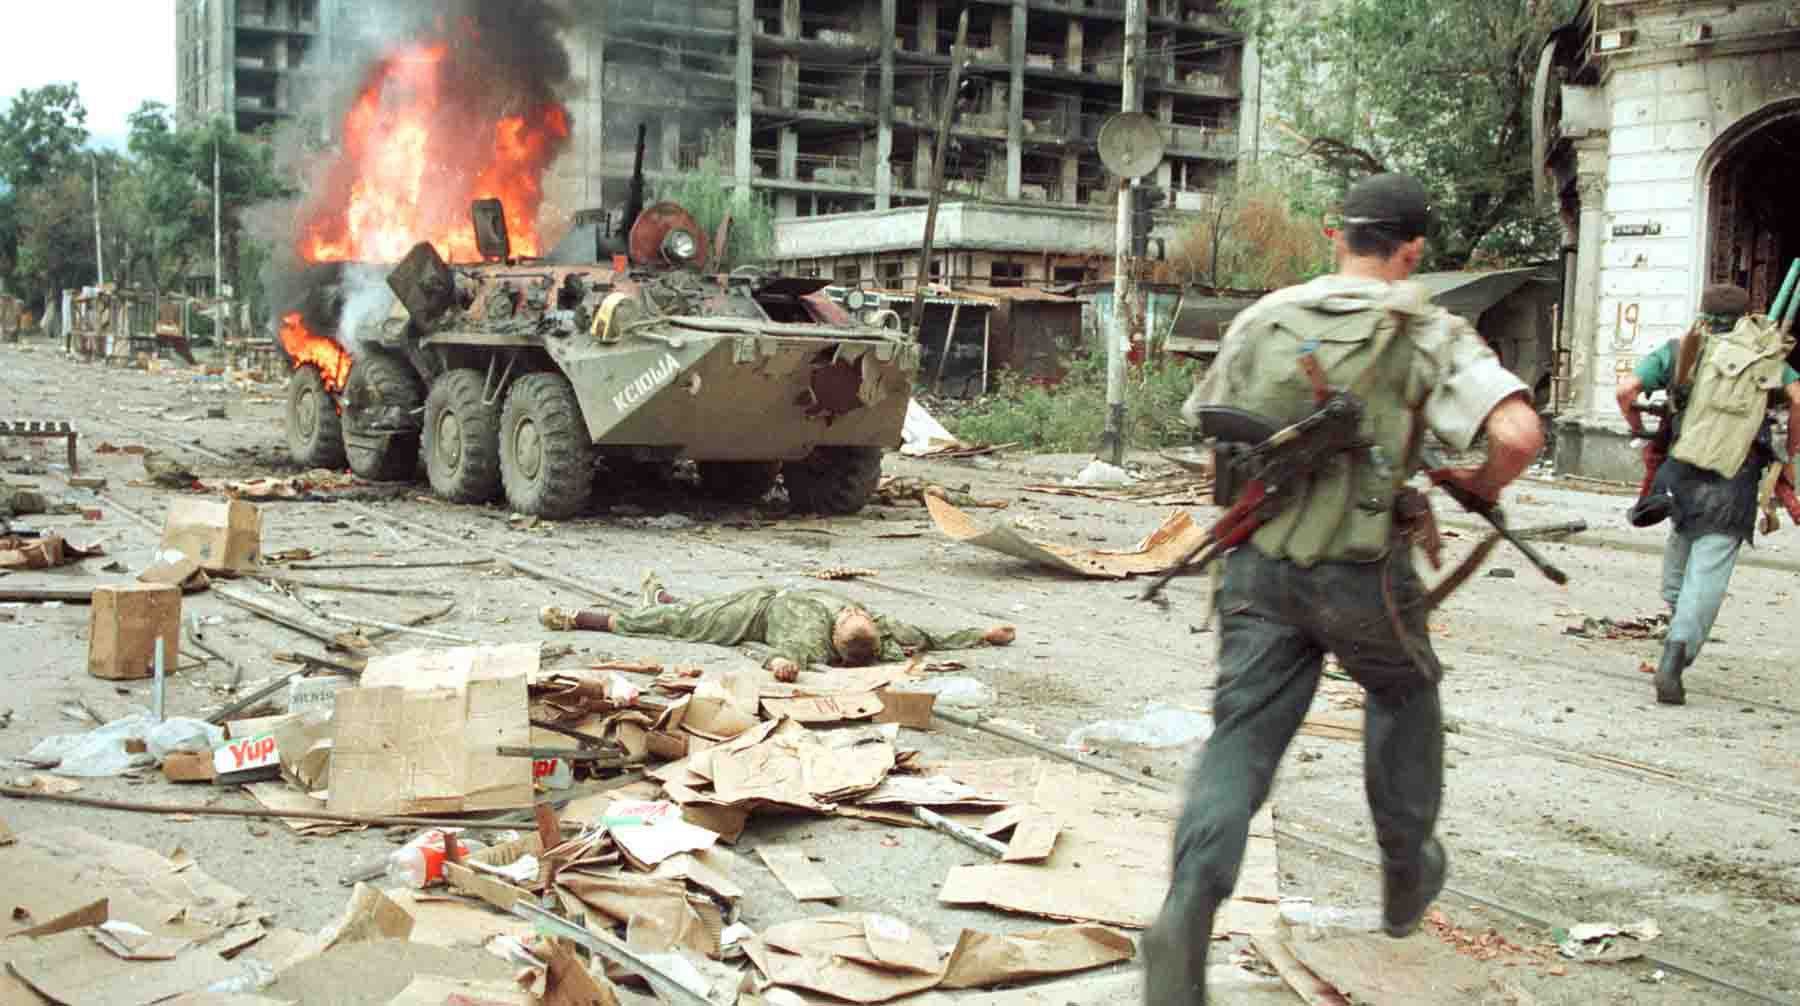 1996 год. Грозный, Россия. Чеченский повстанец проходит мимо горящего российского бронетранспортера.